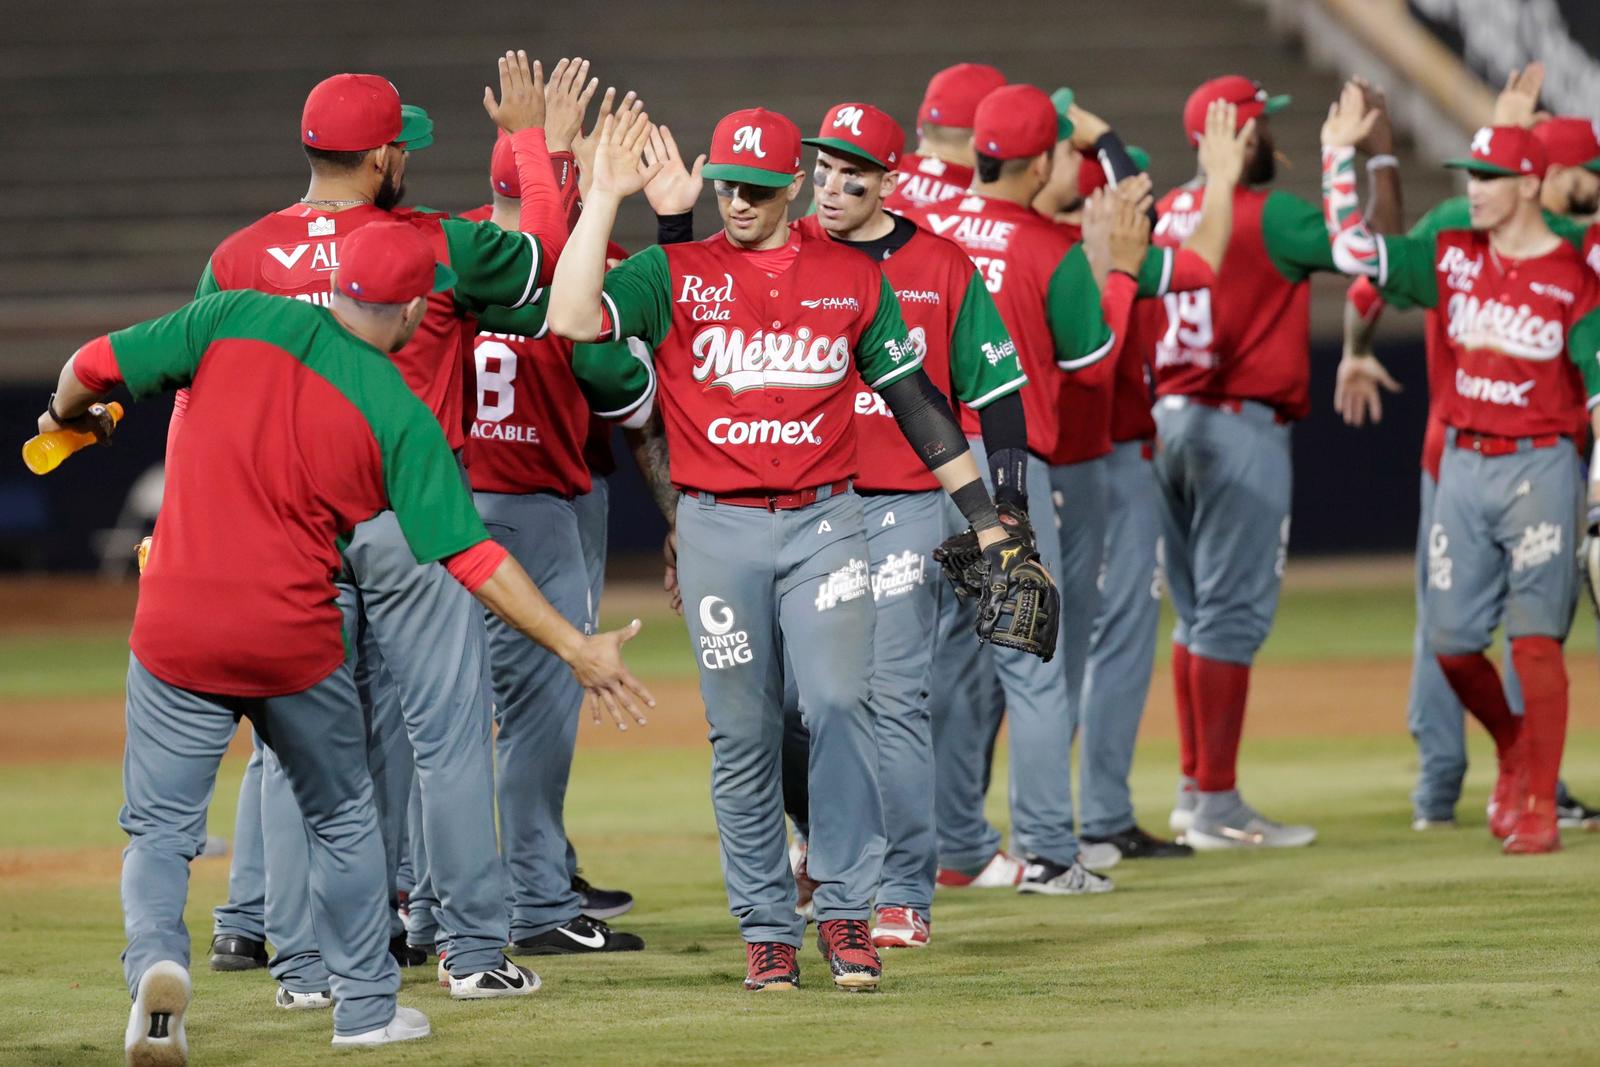 Jugadores de Charros de México celebran al vencer a Cuba durante un partido de la Serie del Caribe.